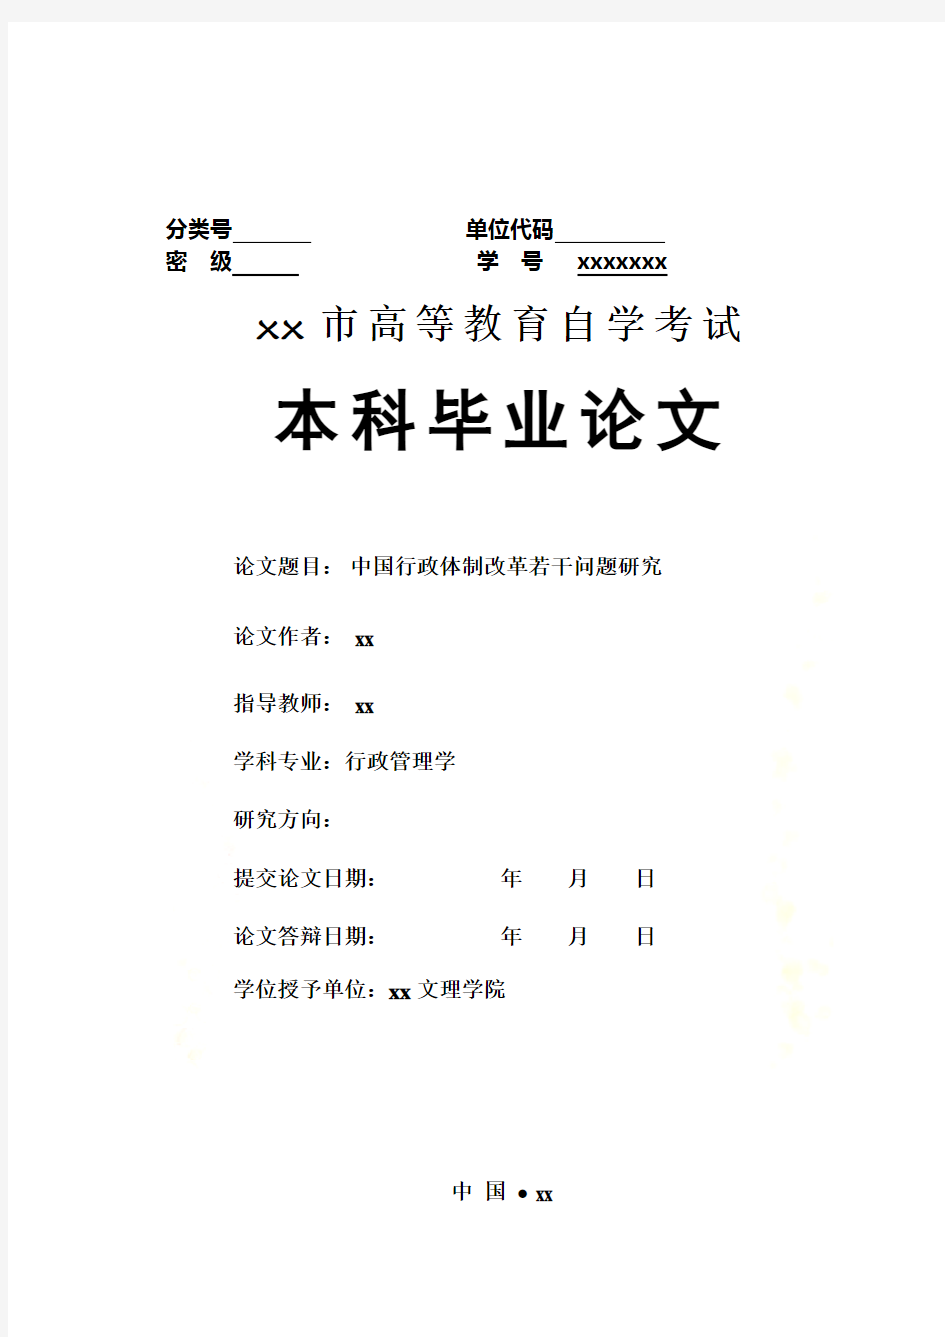 中国行政体制改革若干问题研究-行政管理学本科毕业论文